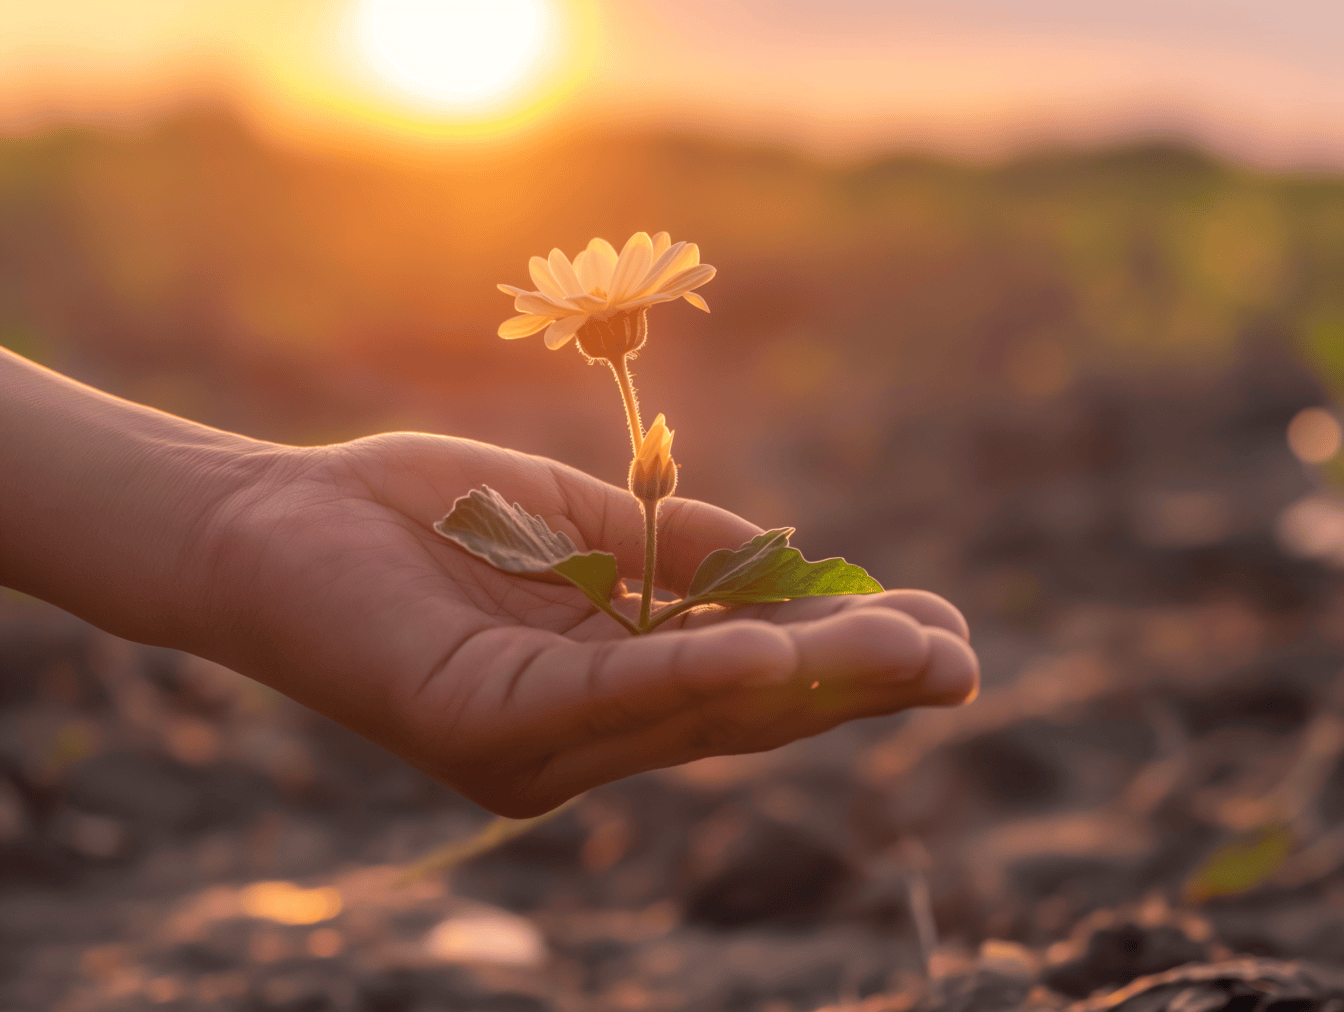 En blomst i håndfladen med svagt sollys ved solnedgang som baggrund